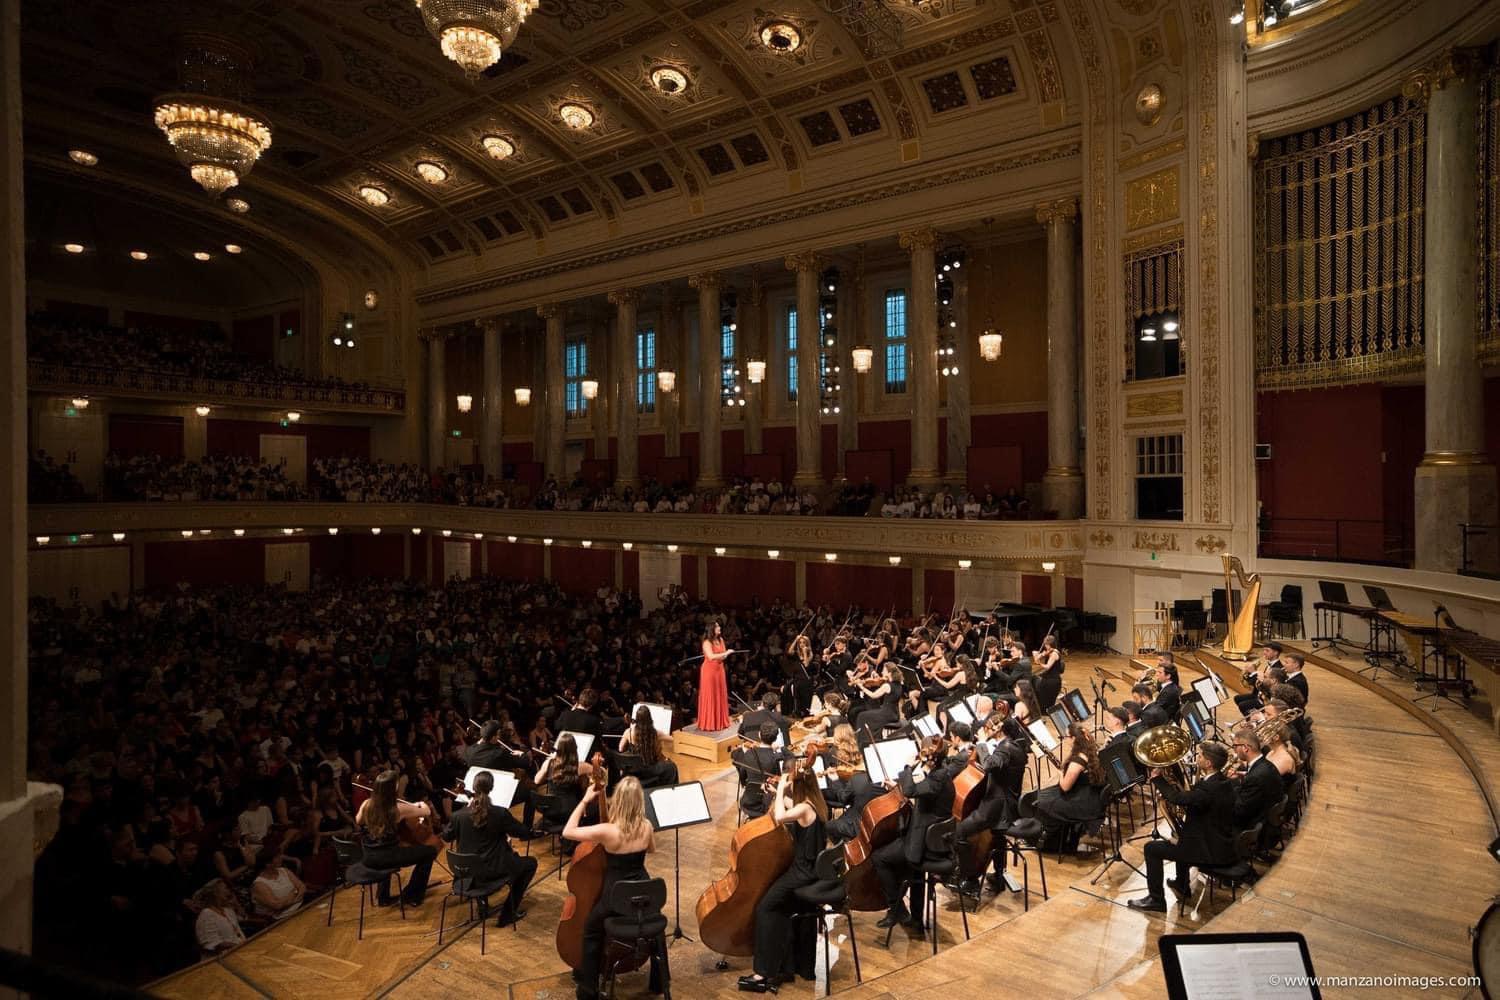 Galleria L’Apulia Youth Symphony Orchestra per la seconda volta consecutiva vince a Vienna - Diapositiva 4 di 4